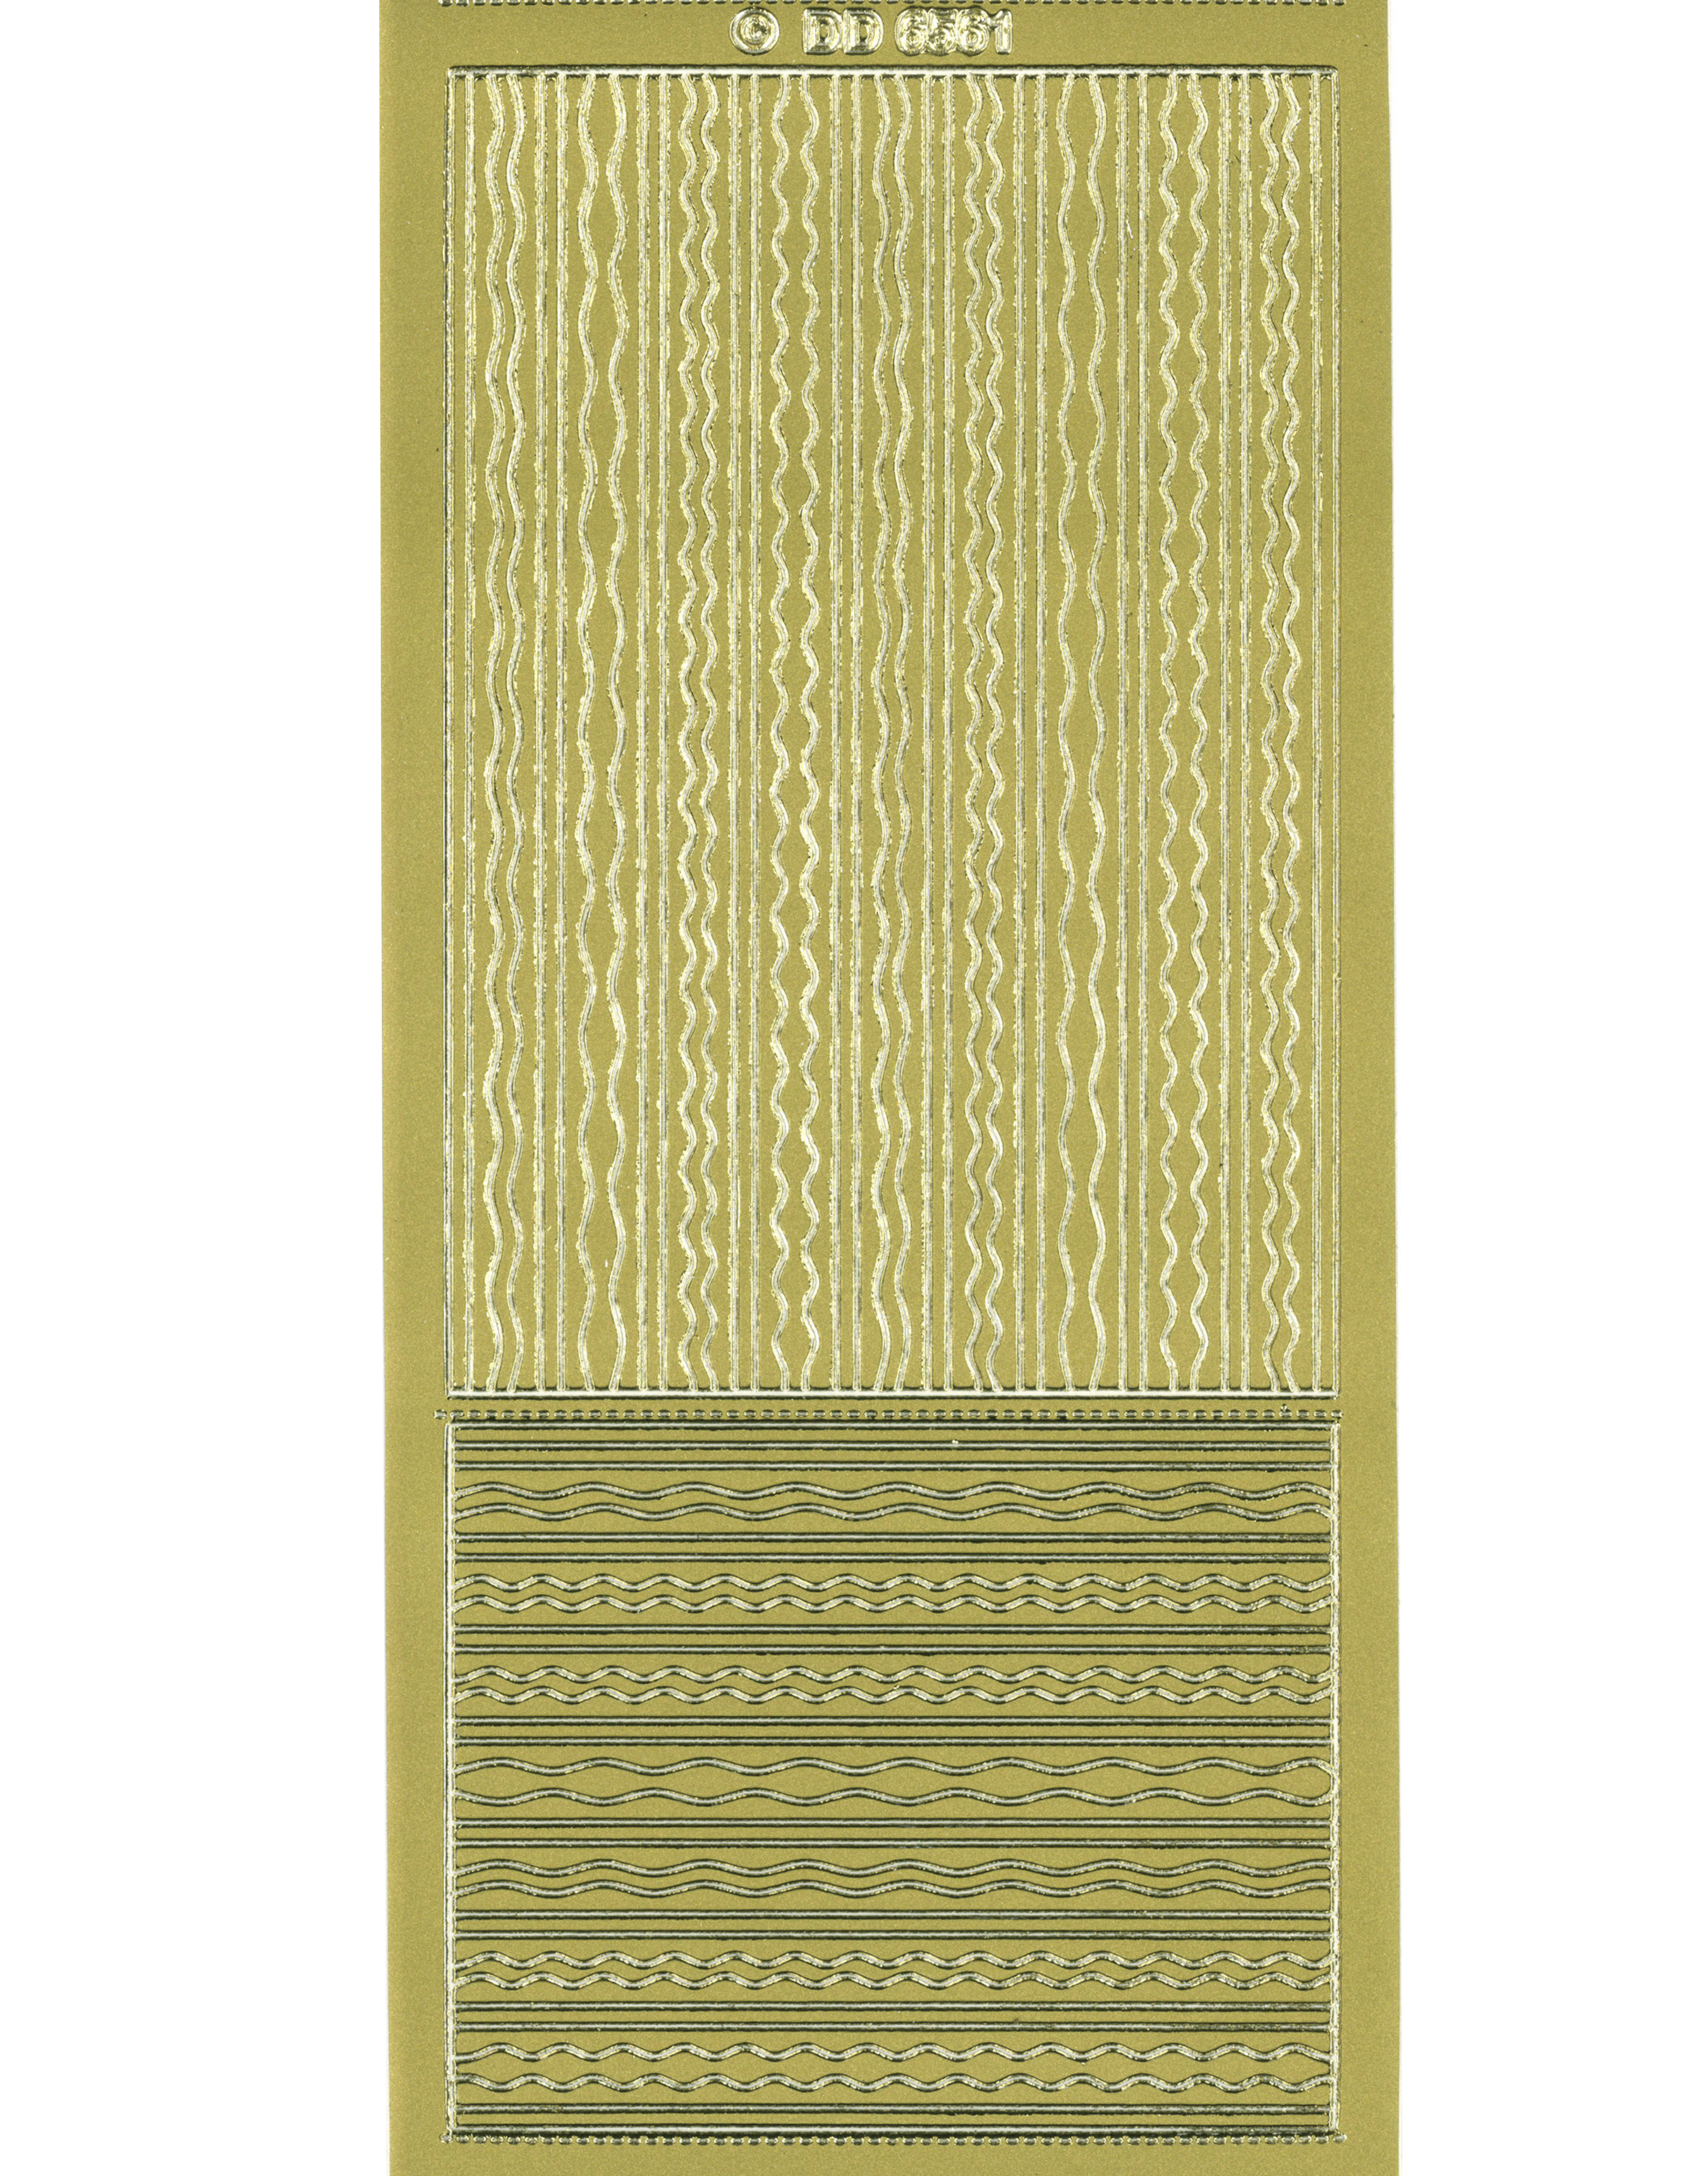 Shiny Outline Stickers Streifen Linien Wellen gold Konturensticker 10x23cm Bogen